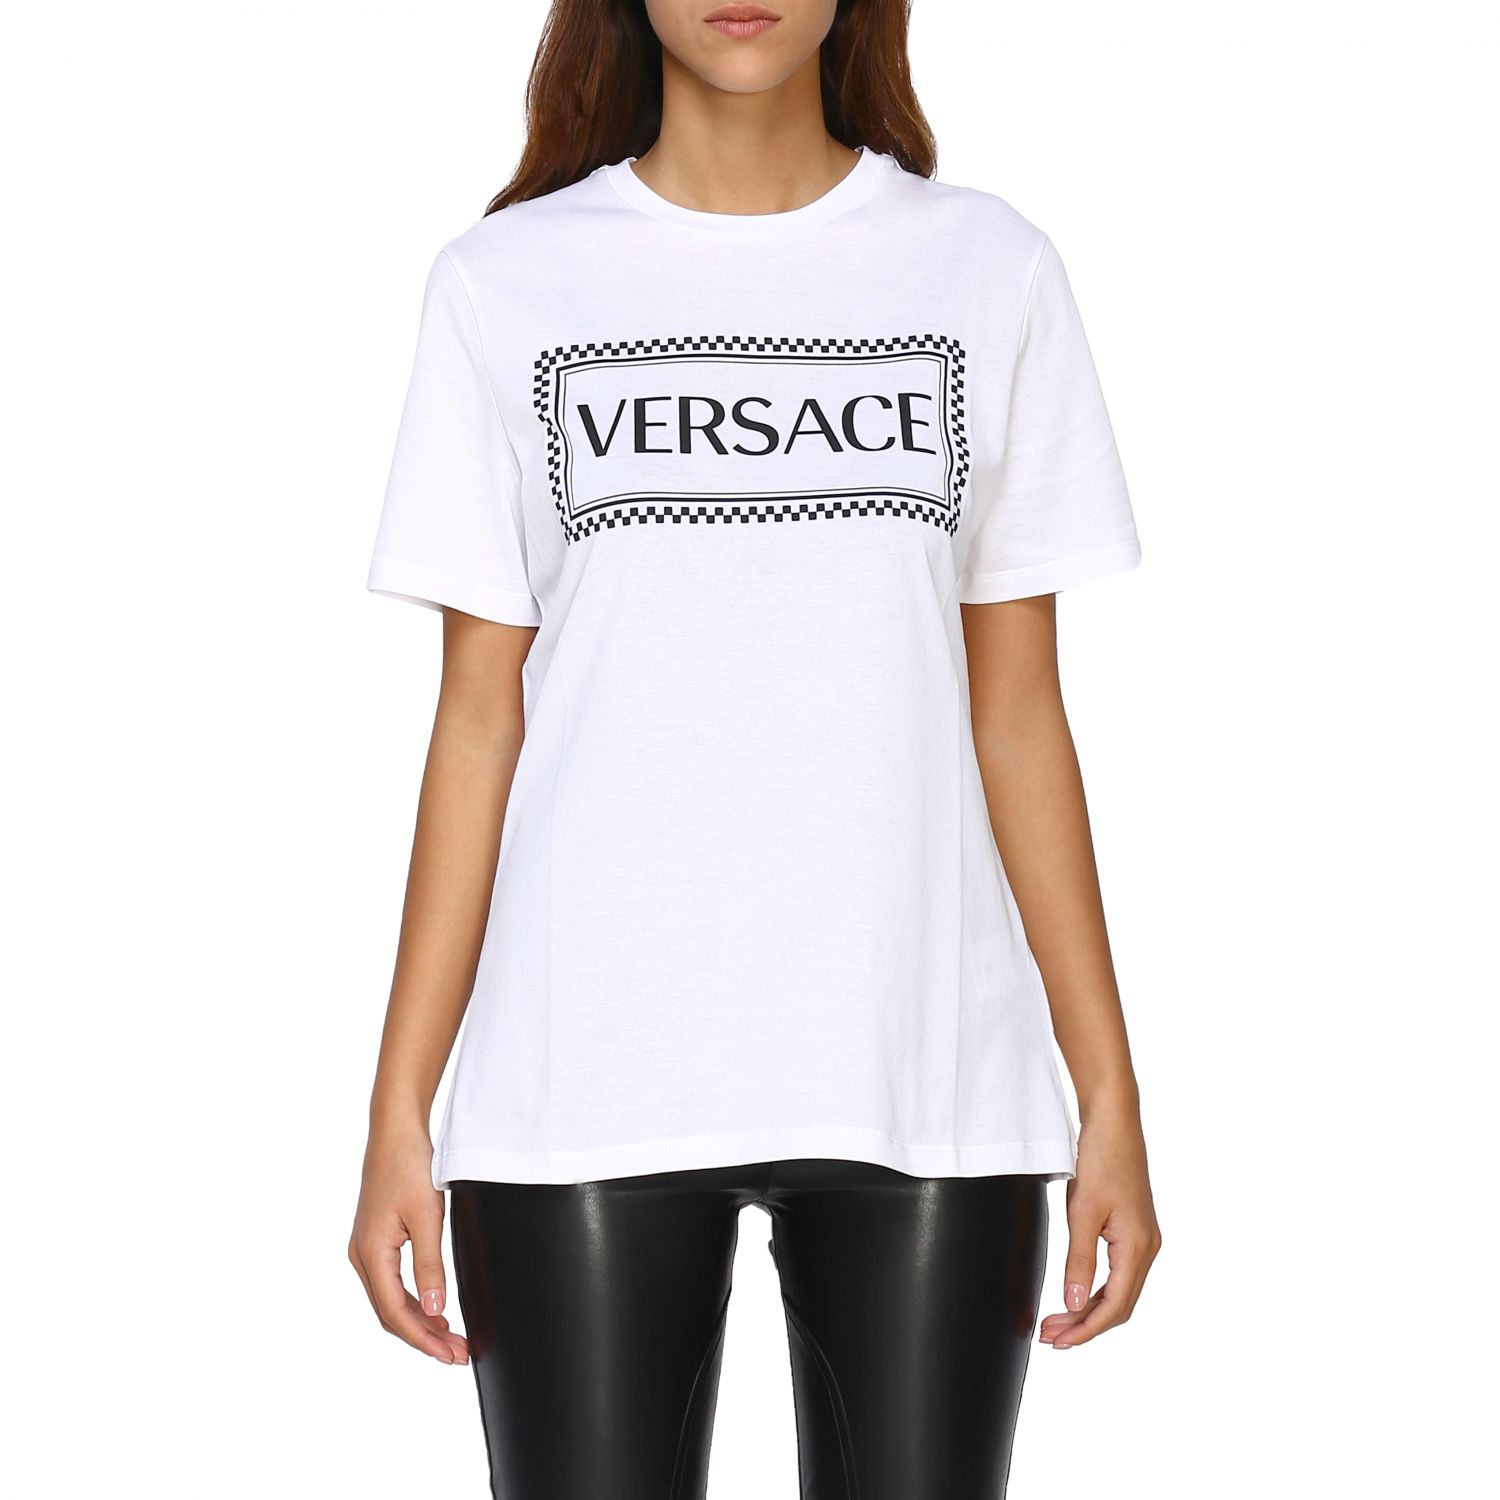 versace women tshirt